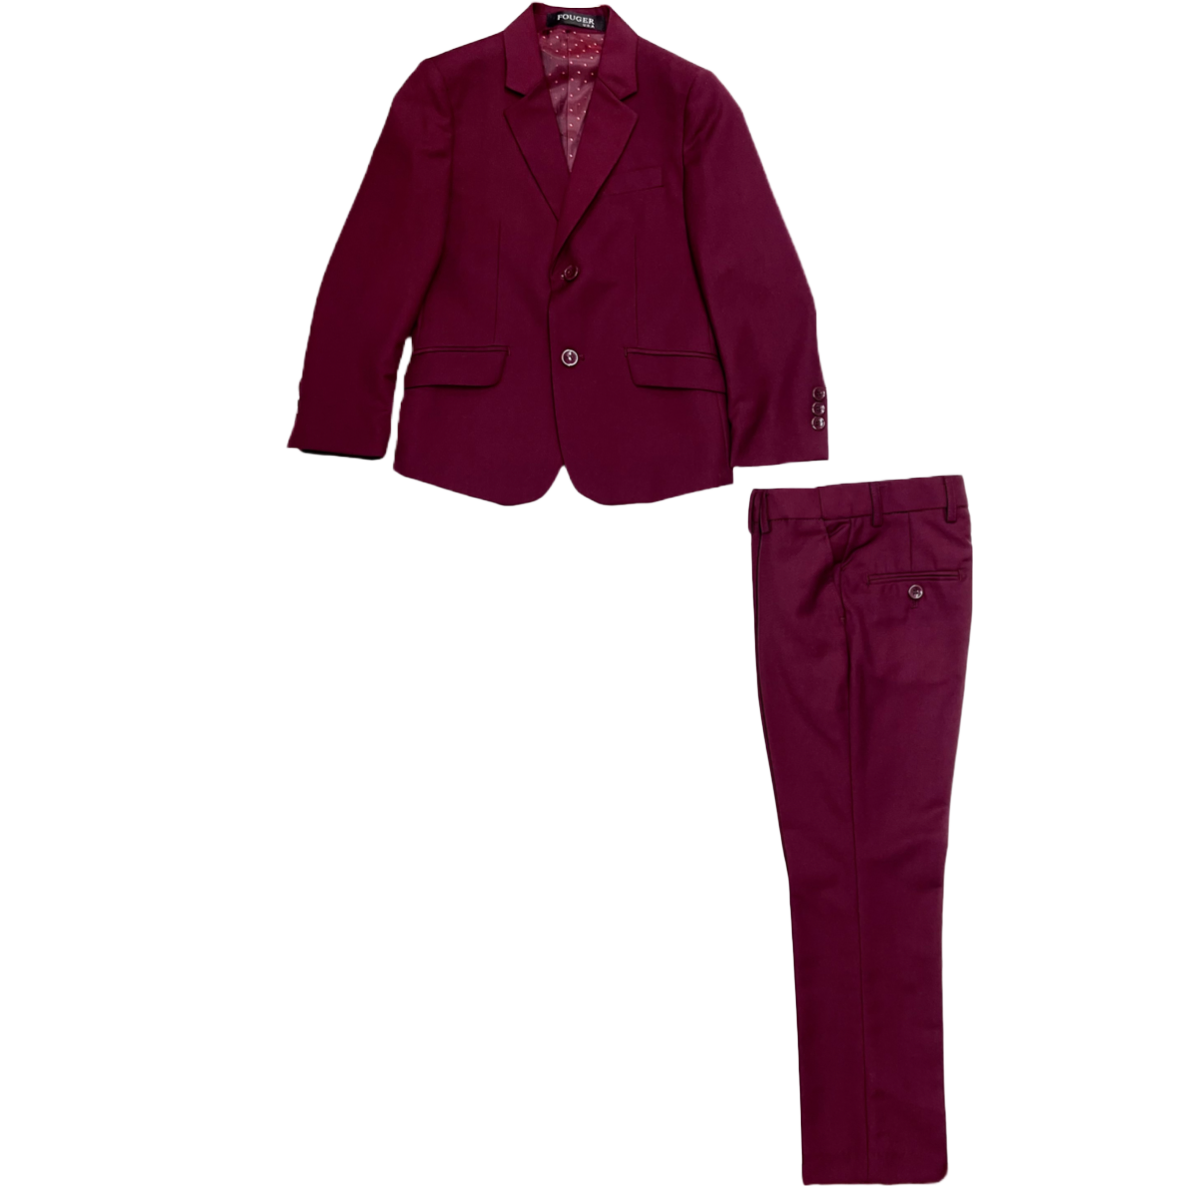 Fouger U.S.A. Slim Fit 3-Piece Burgundy Suit